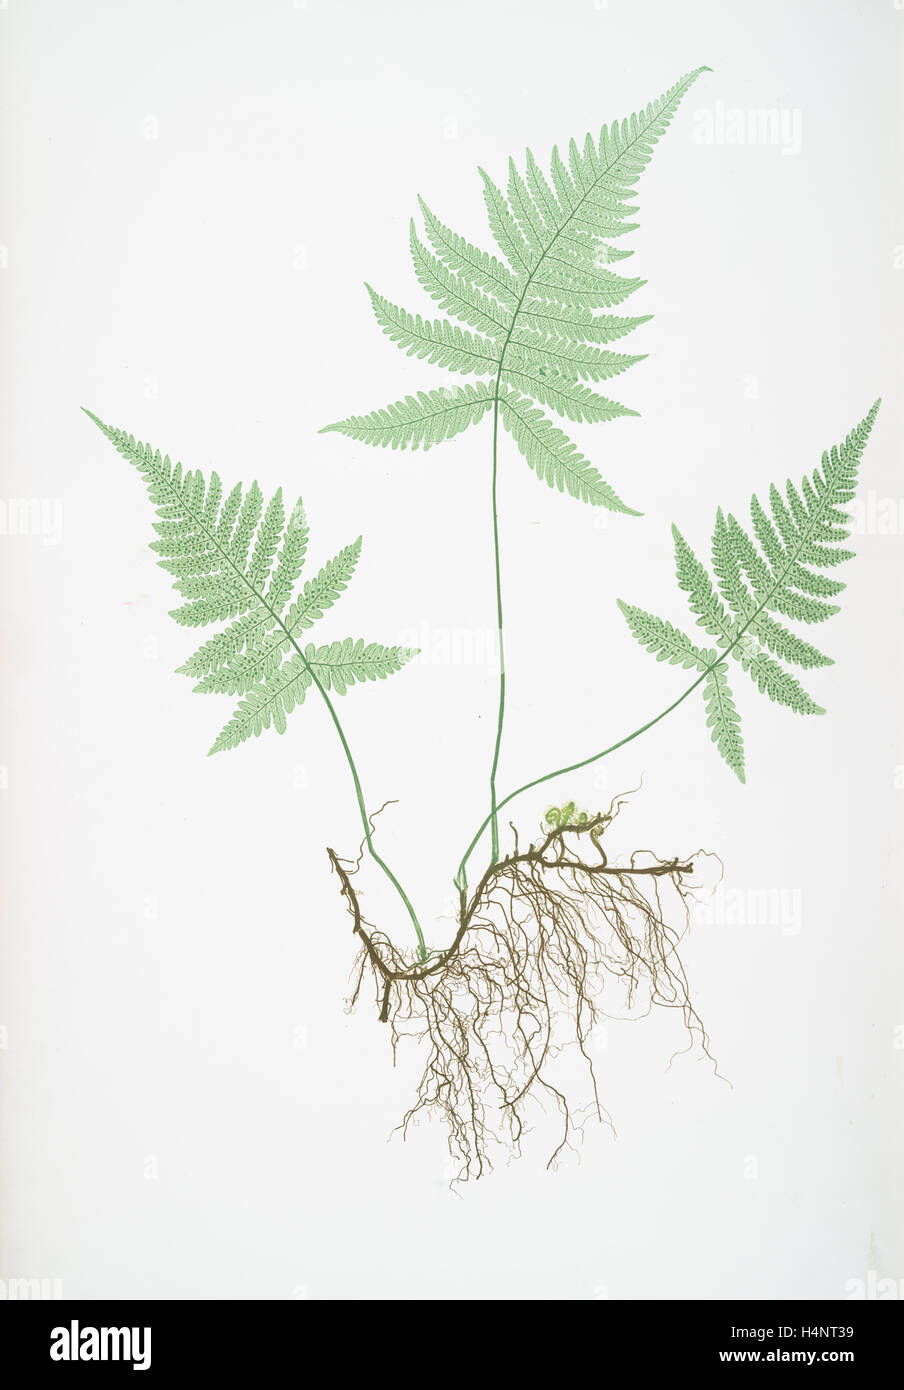 Polypodium Phegopteris. La montagne, le polypode fougère ou hêtre, Bradbury, Henry Riley (1821-1887), (illustrateur), 1857, de fougères Banque D'Images